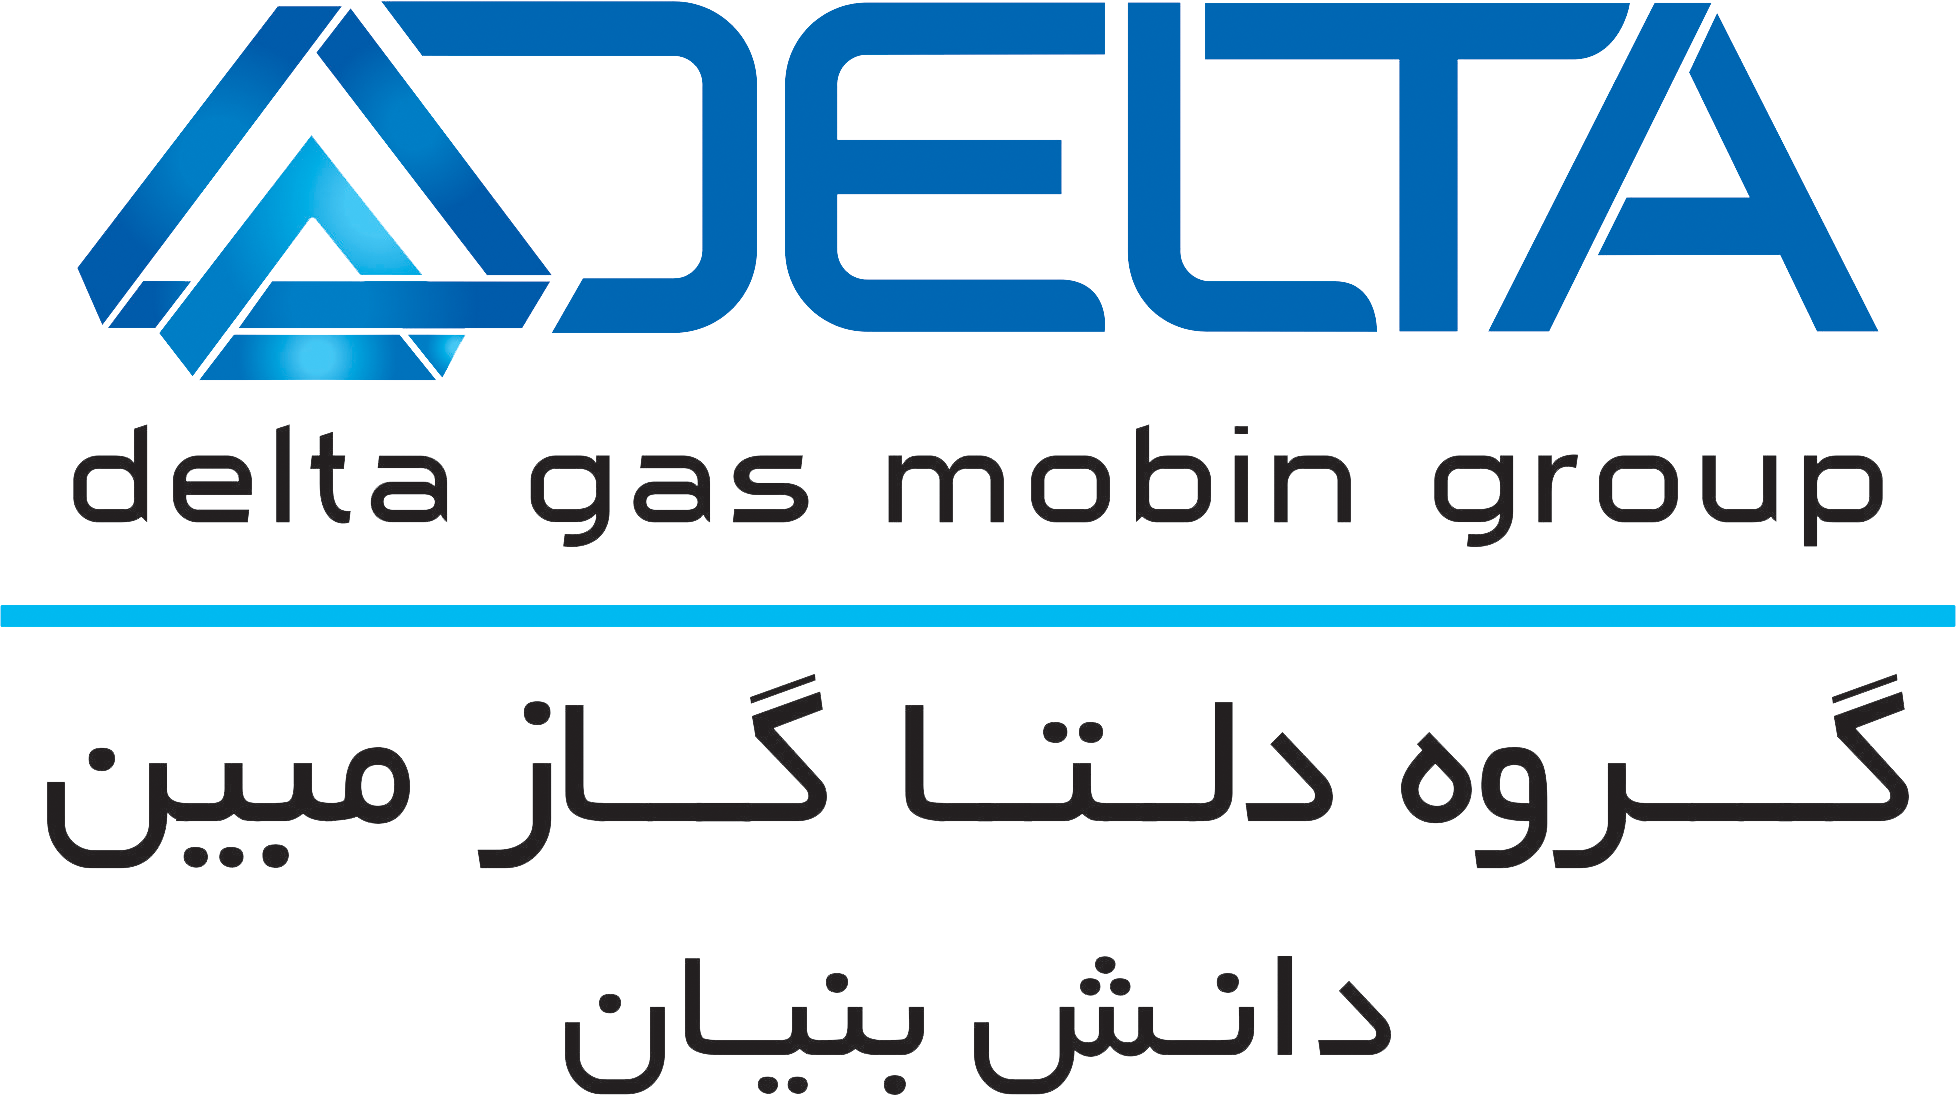 کارشناس کنترل کیفیت | Quality Control Expert - گروه دلتا گاز مبین | Delta Gas Mobin Group